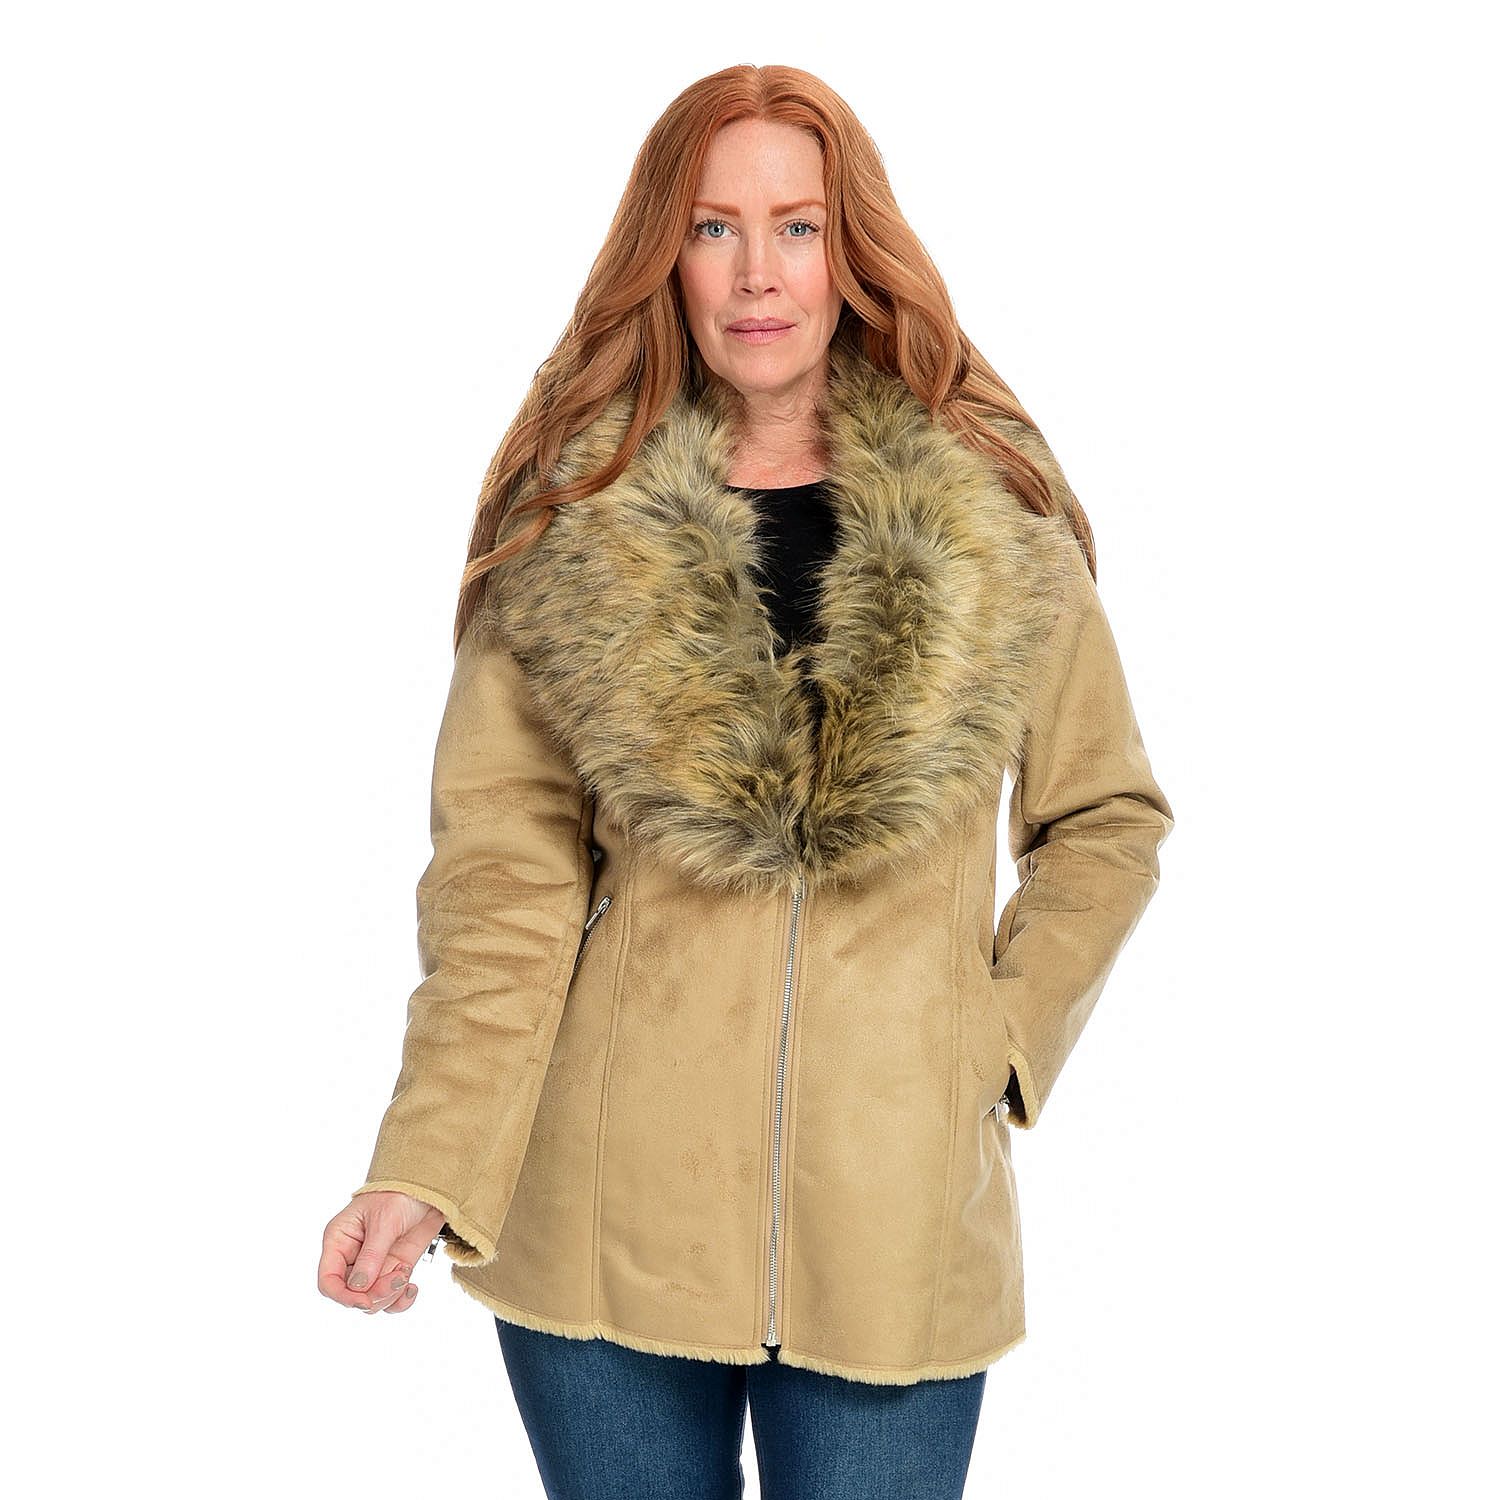 (ShopHQ) Donna Salyers' Fabulous-Furs Faux Suede & Faux Fox Fur Shawl ...